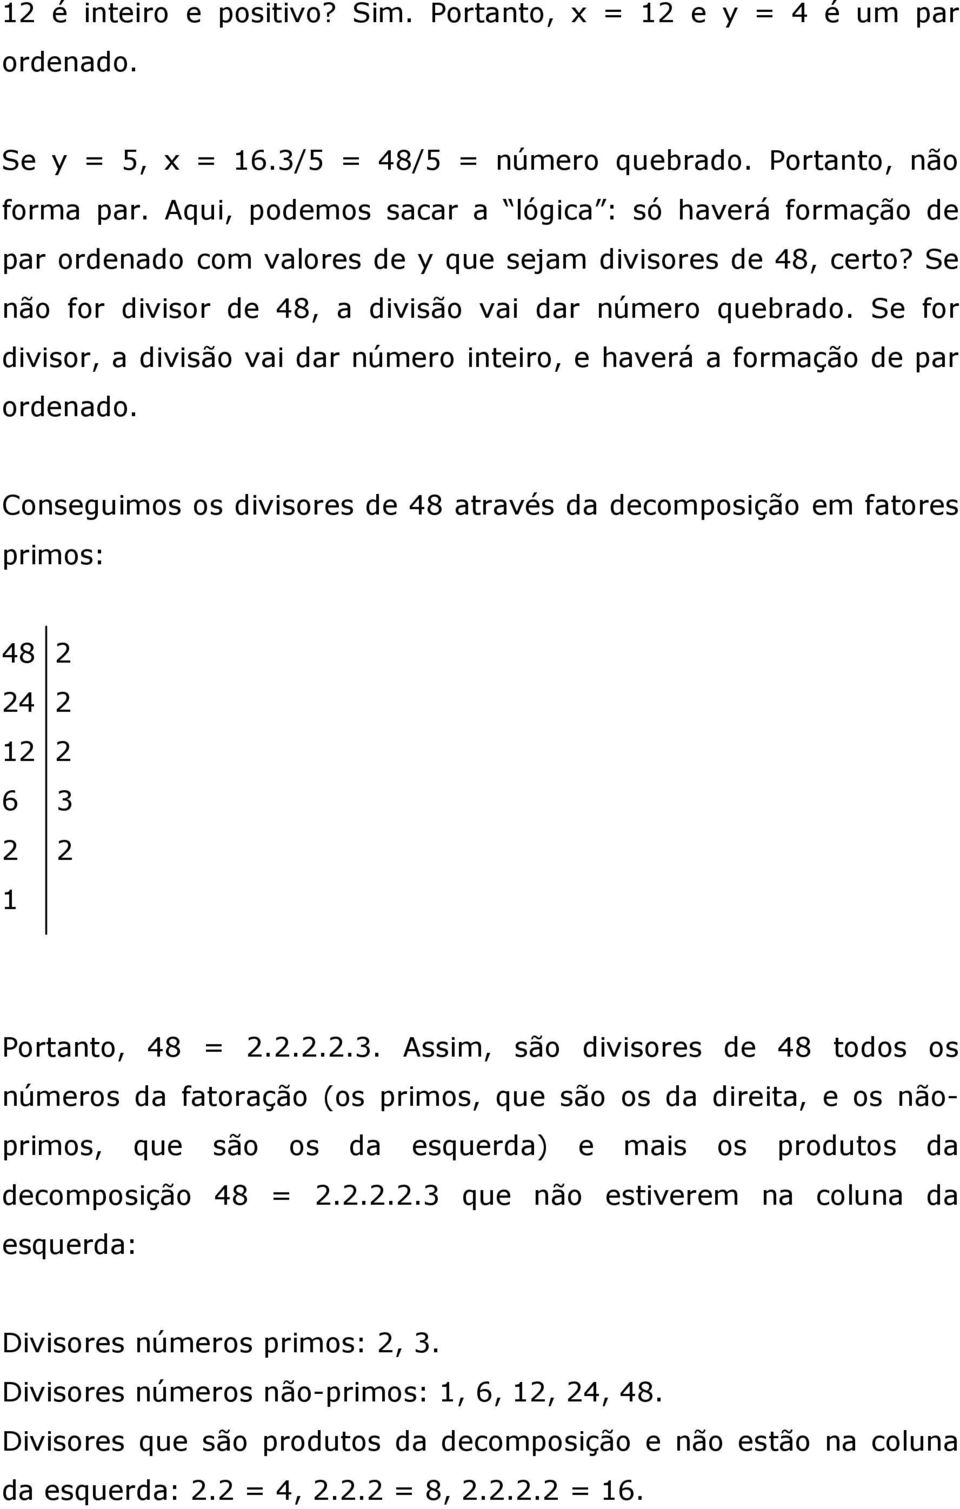 Se for divisor, a divisão vai dar número inteiro, e haverá a formação de par ordenado.